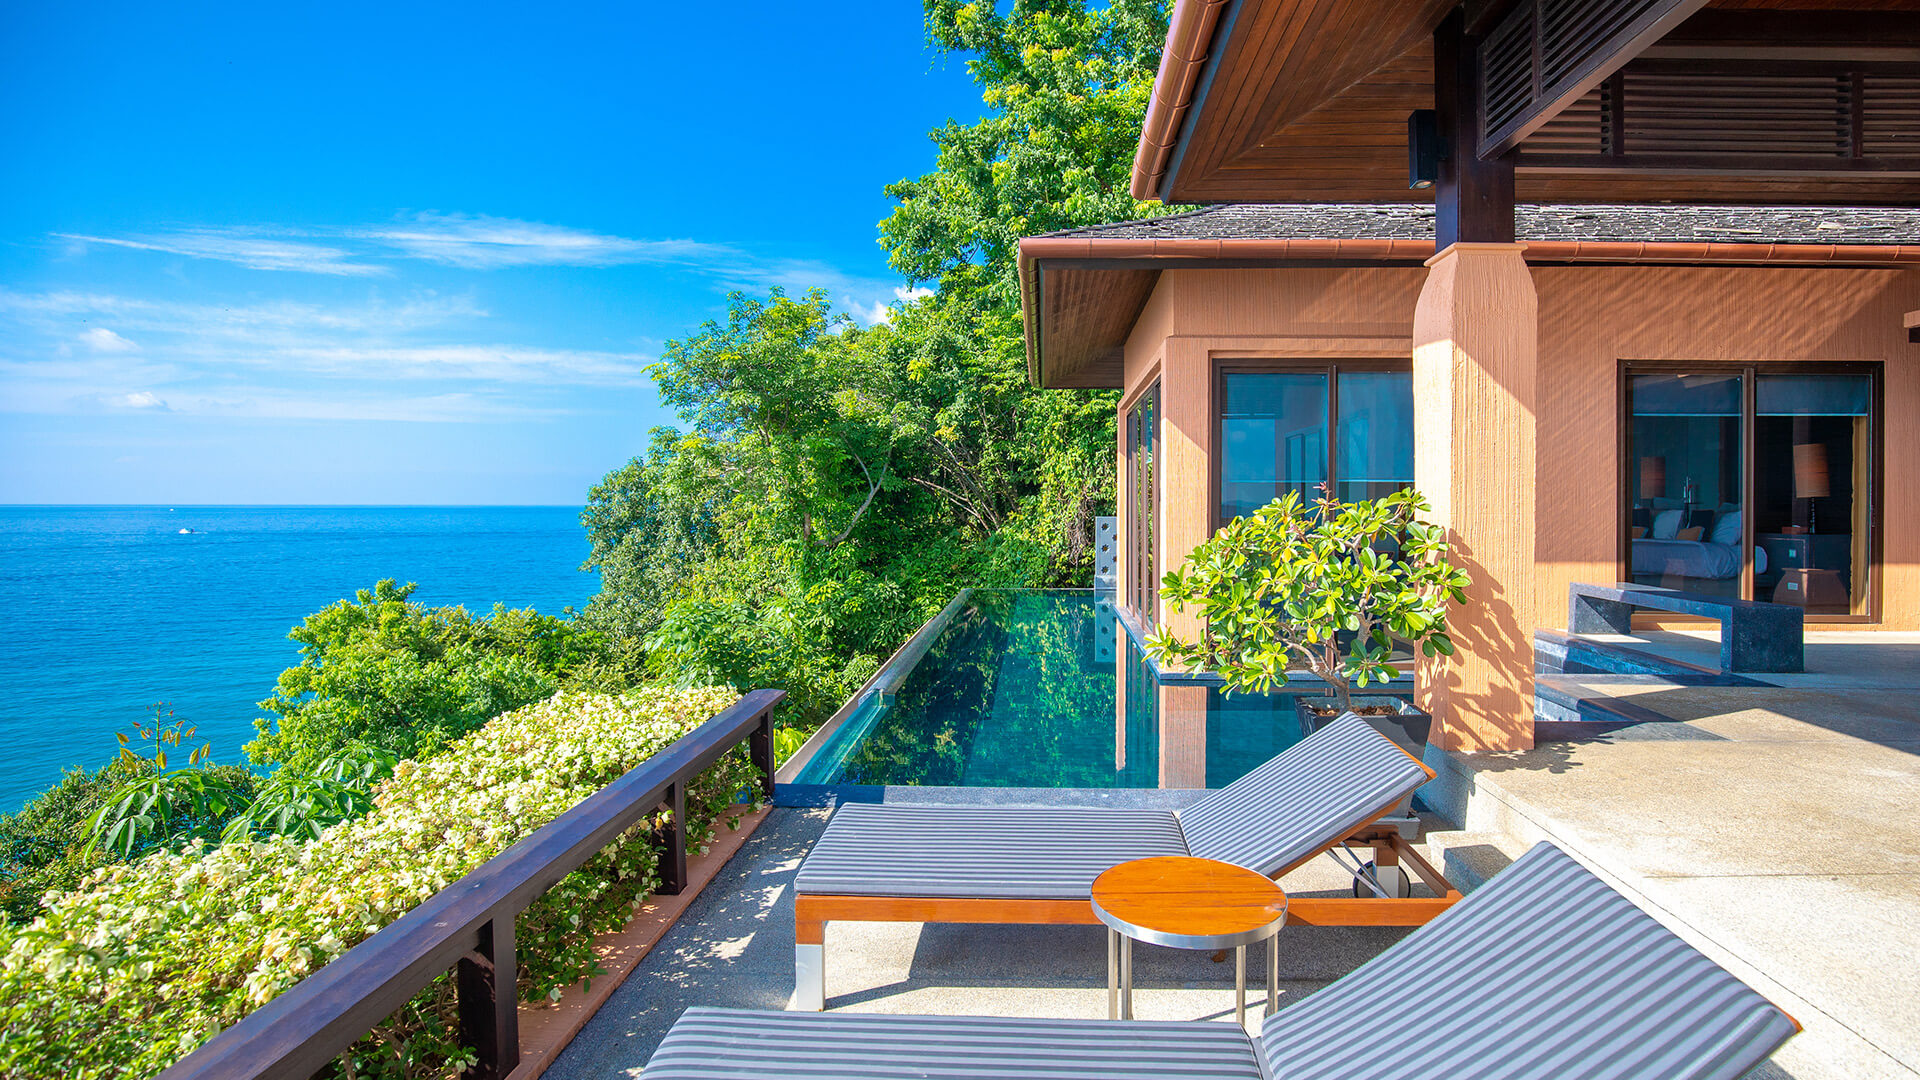 hotel phuket luxury private pool villa one bedroom sunbath sea view